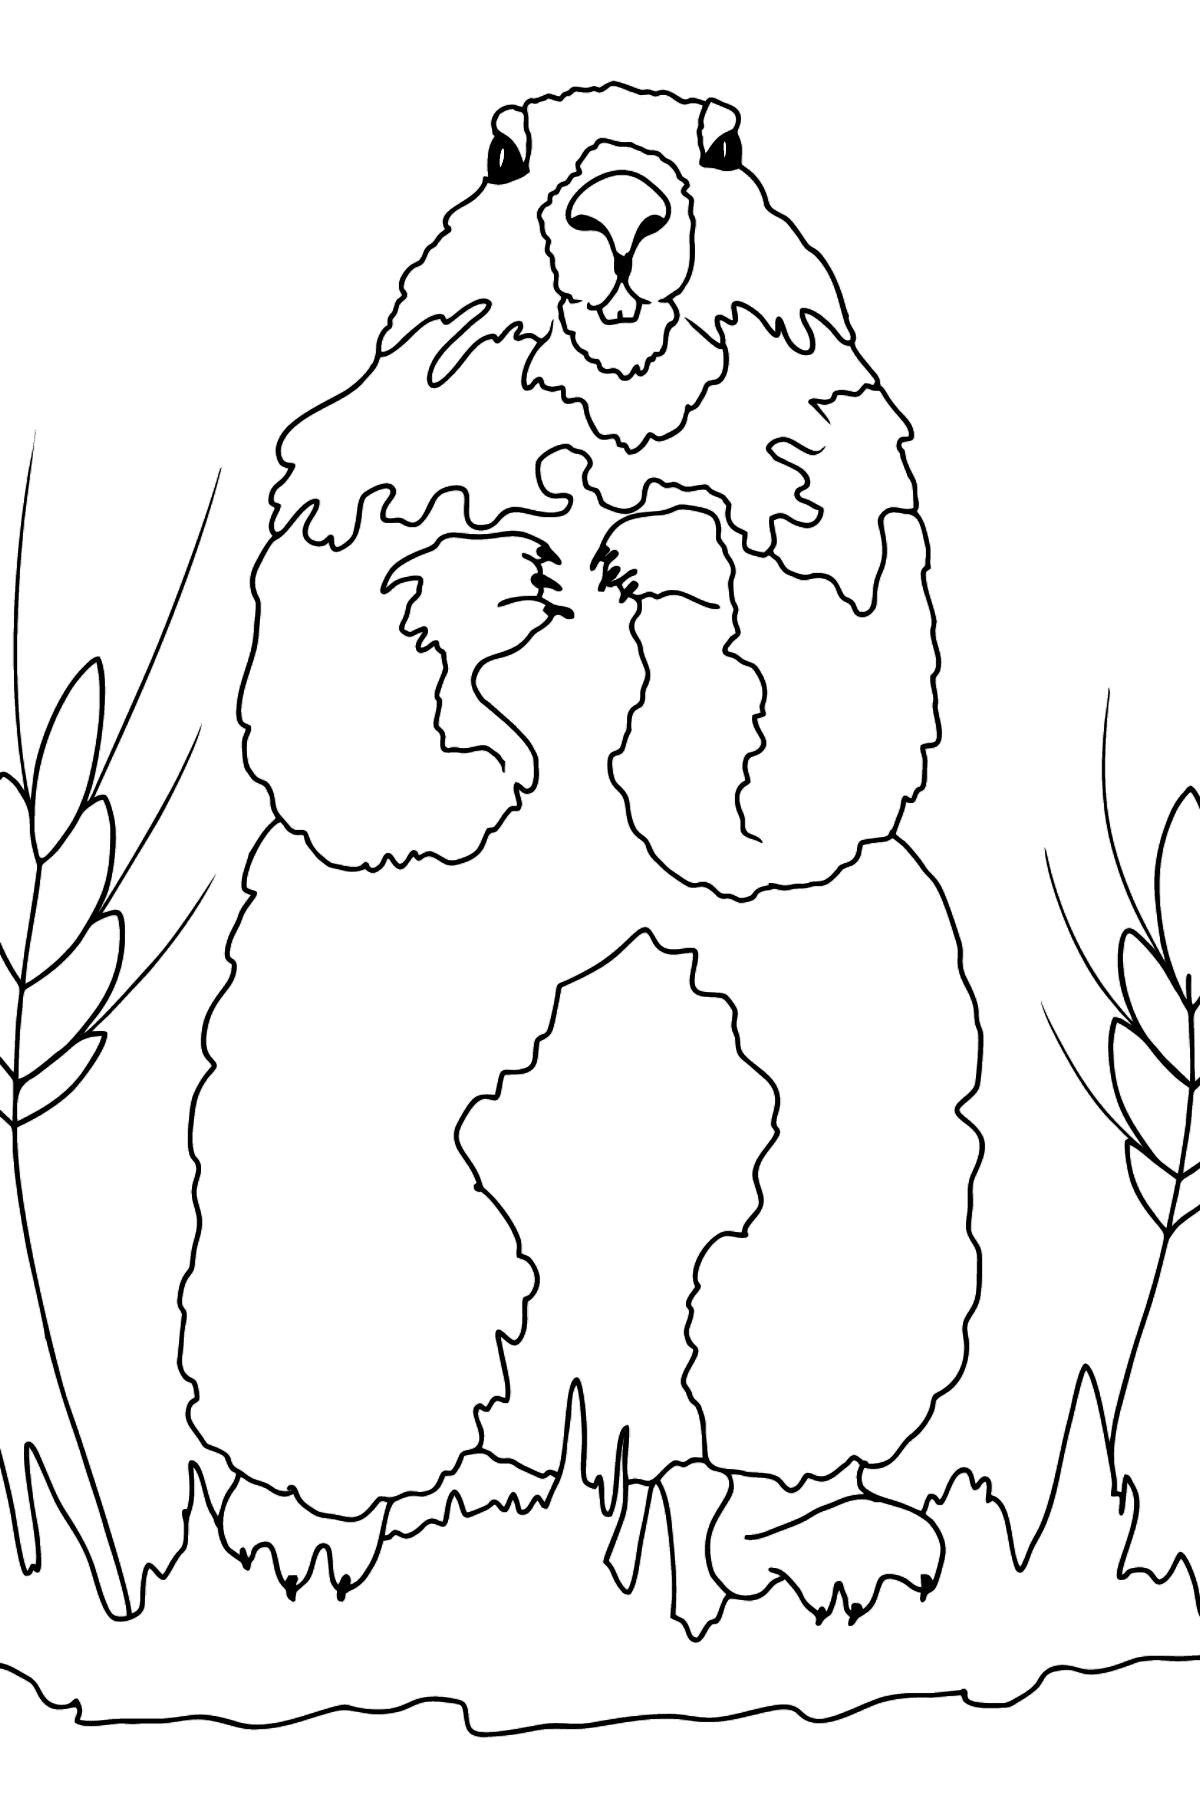 Dibujo para Colorear - Una Marmota Mirando a su Alrededor - Dibujos para Colorear para Niños